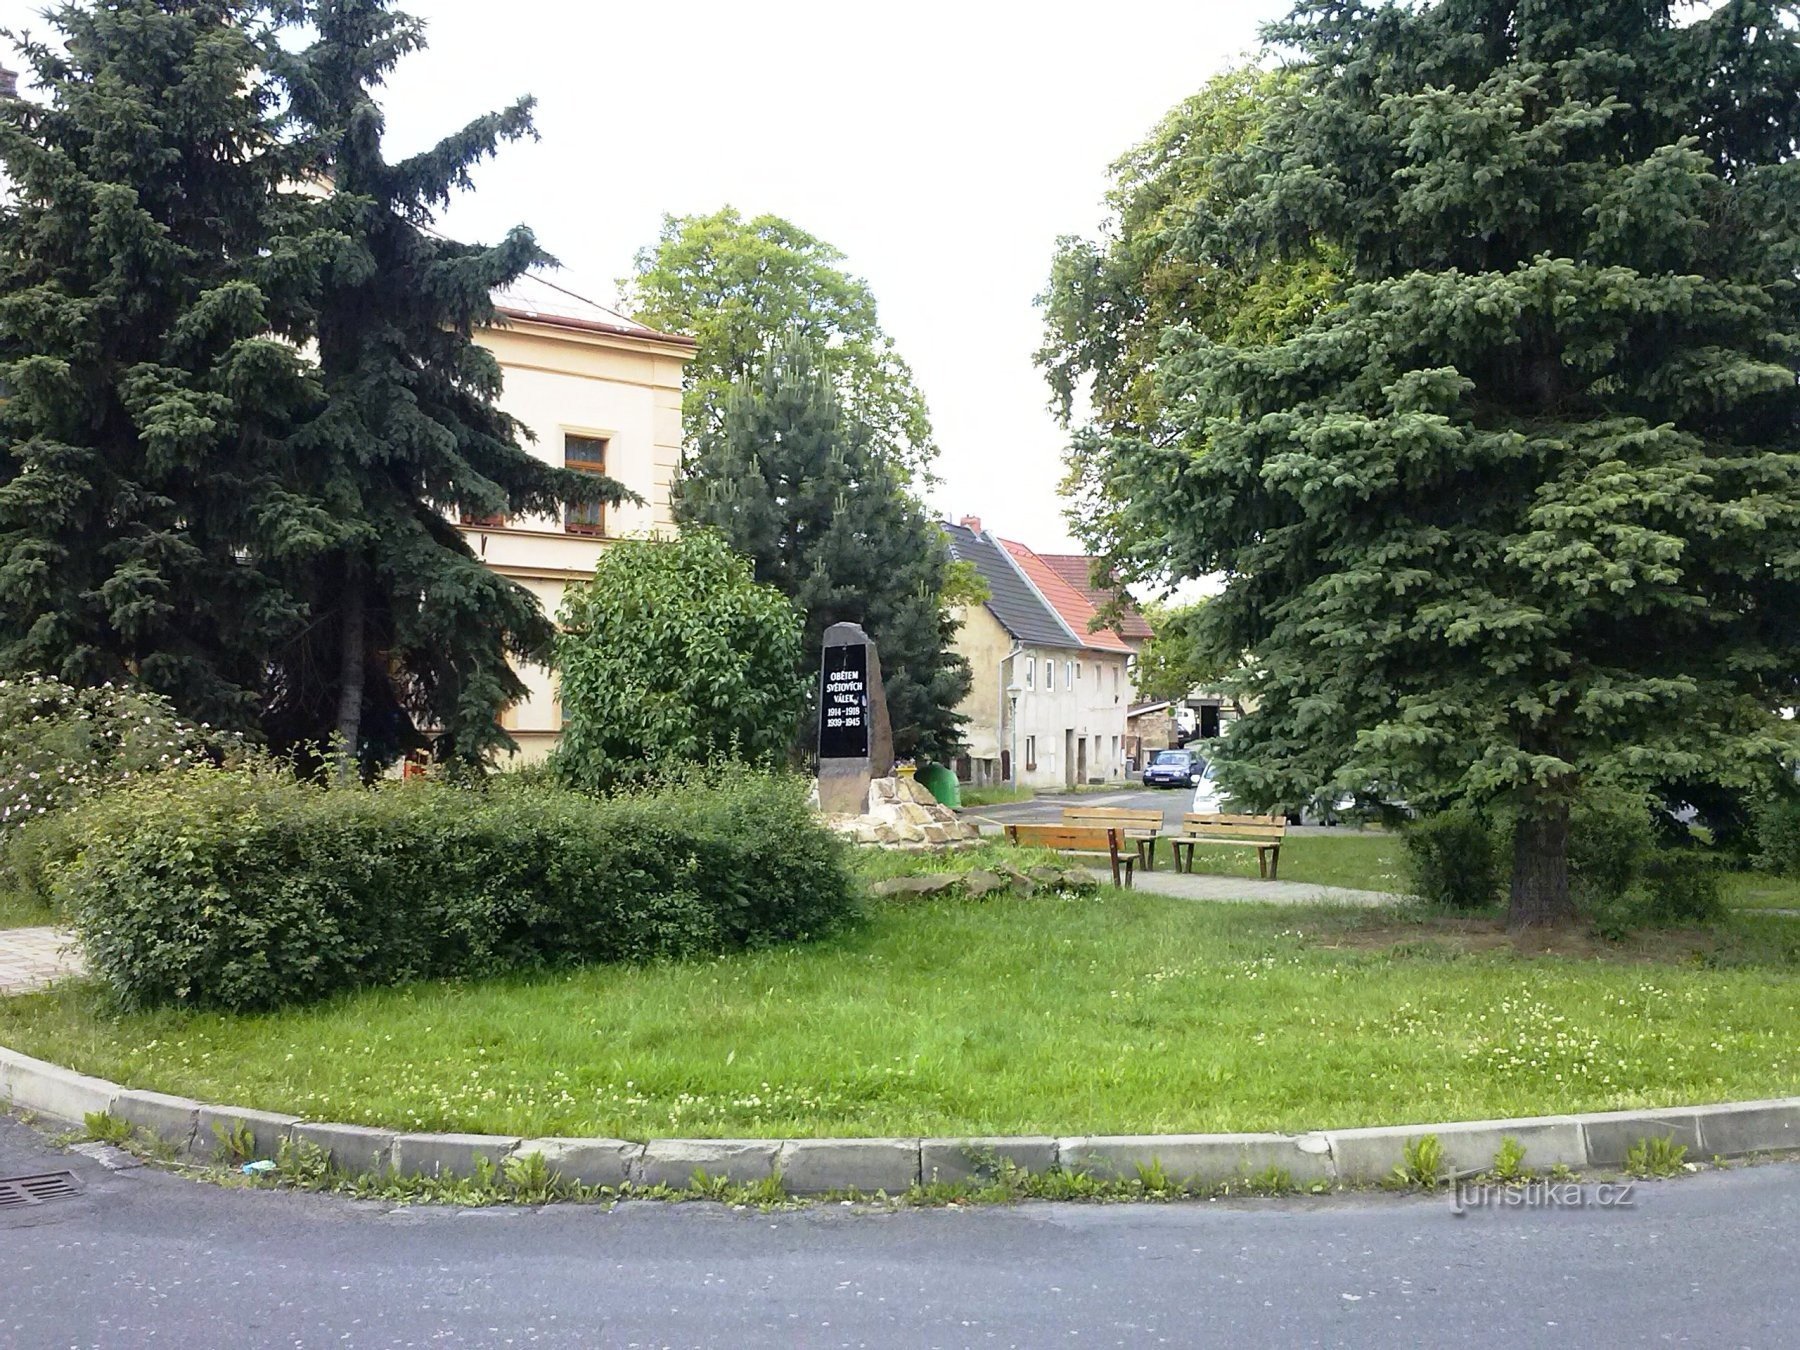 2. En sættevogn i Újezdeček med et monument